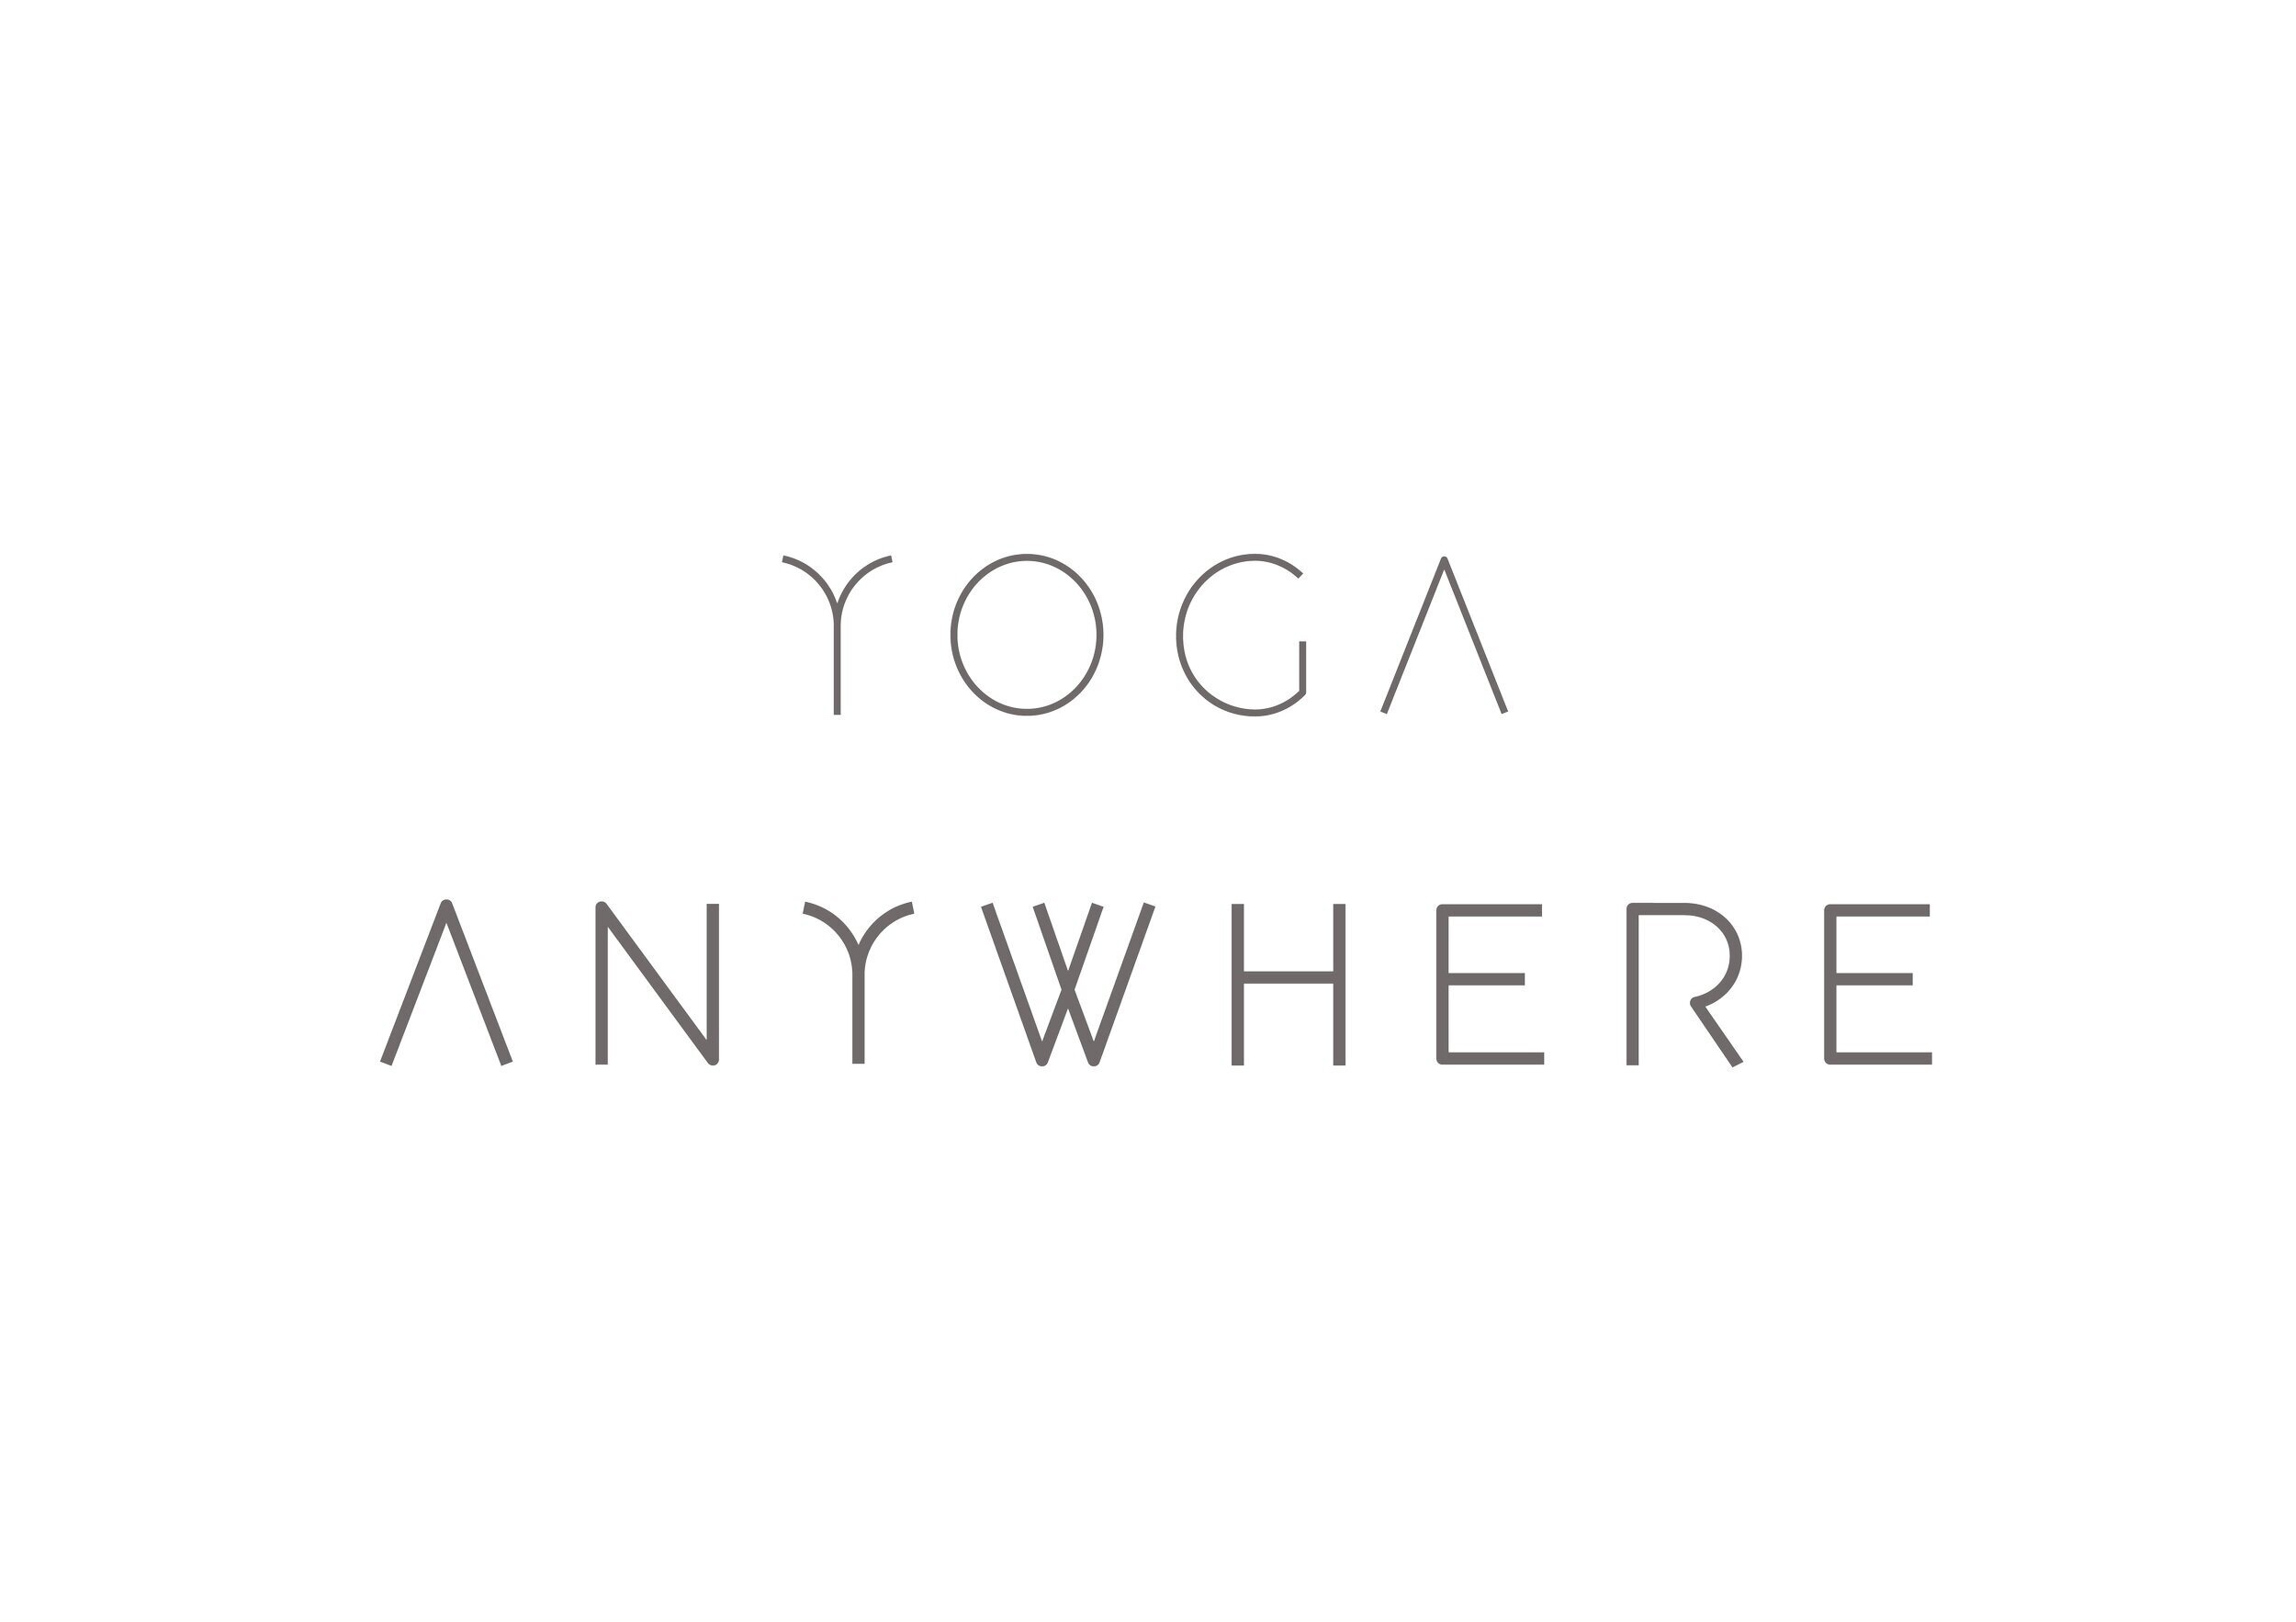 Yoga Anywhere